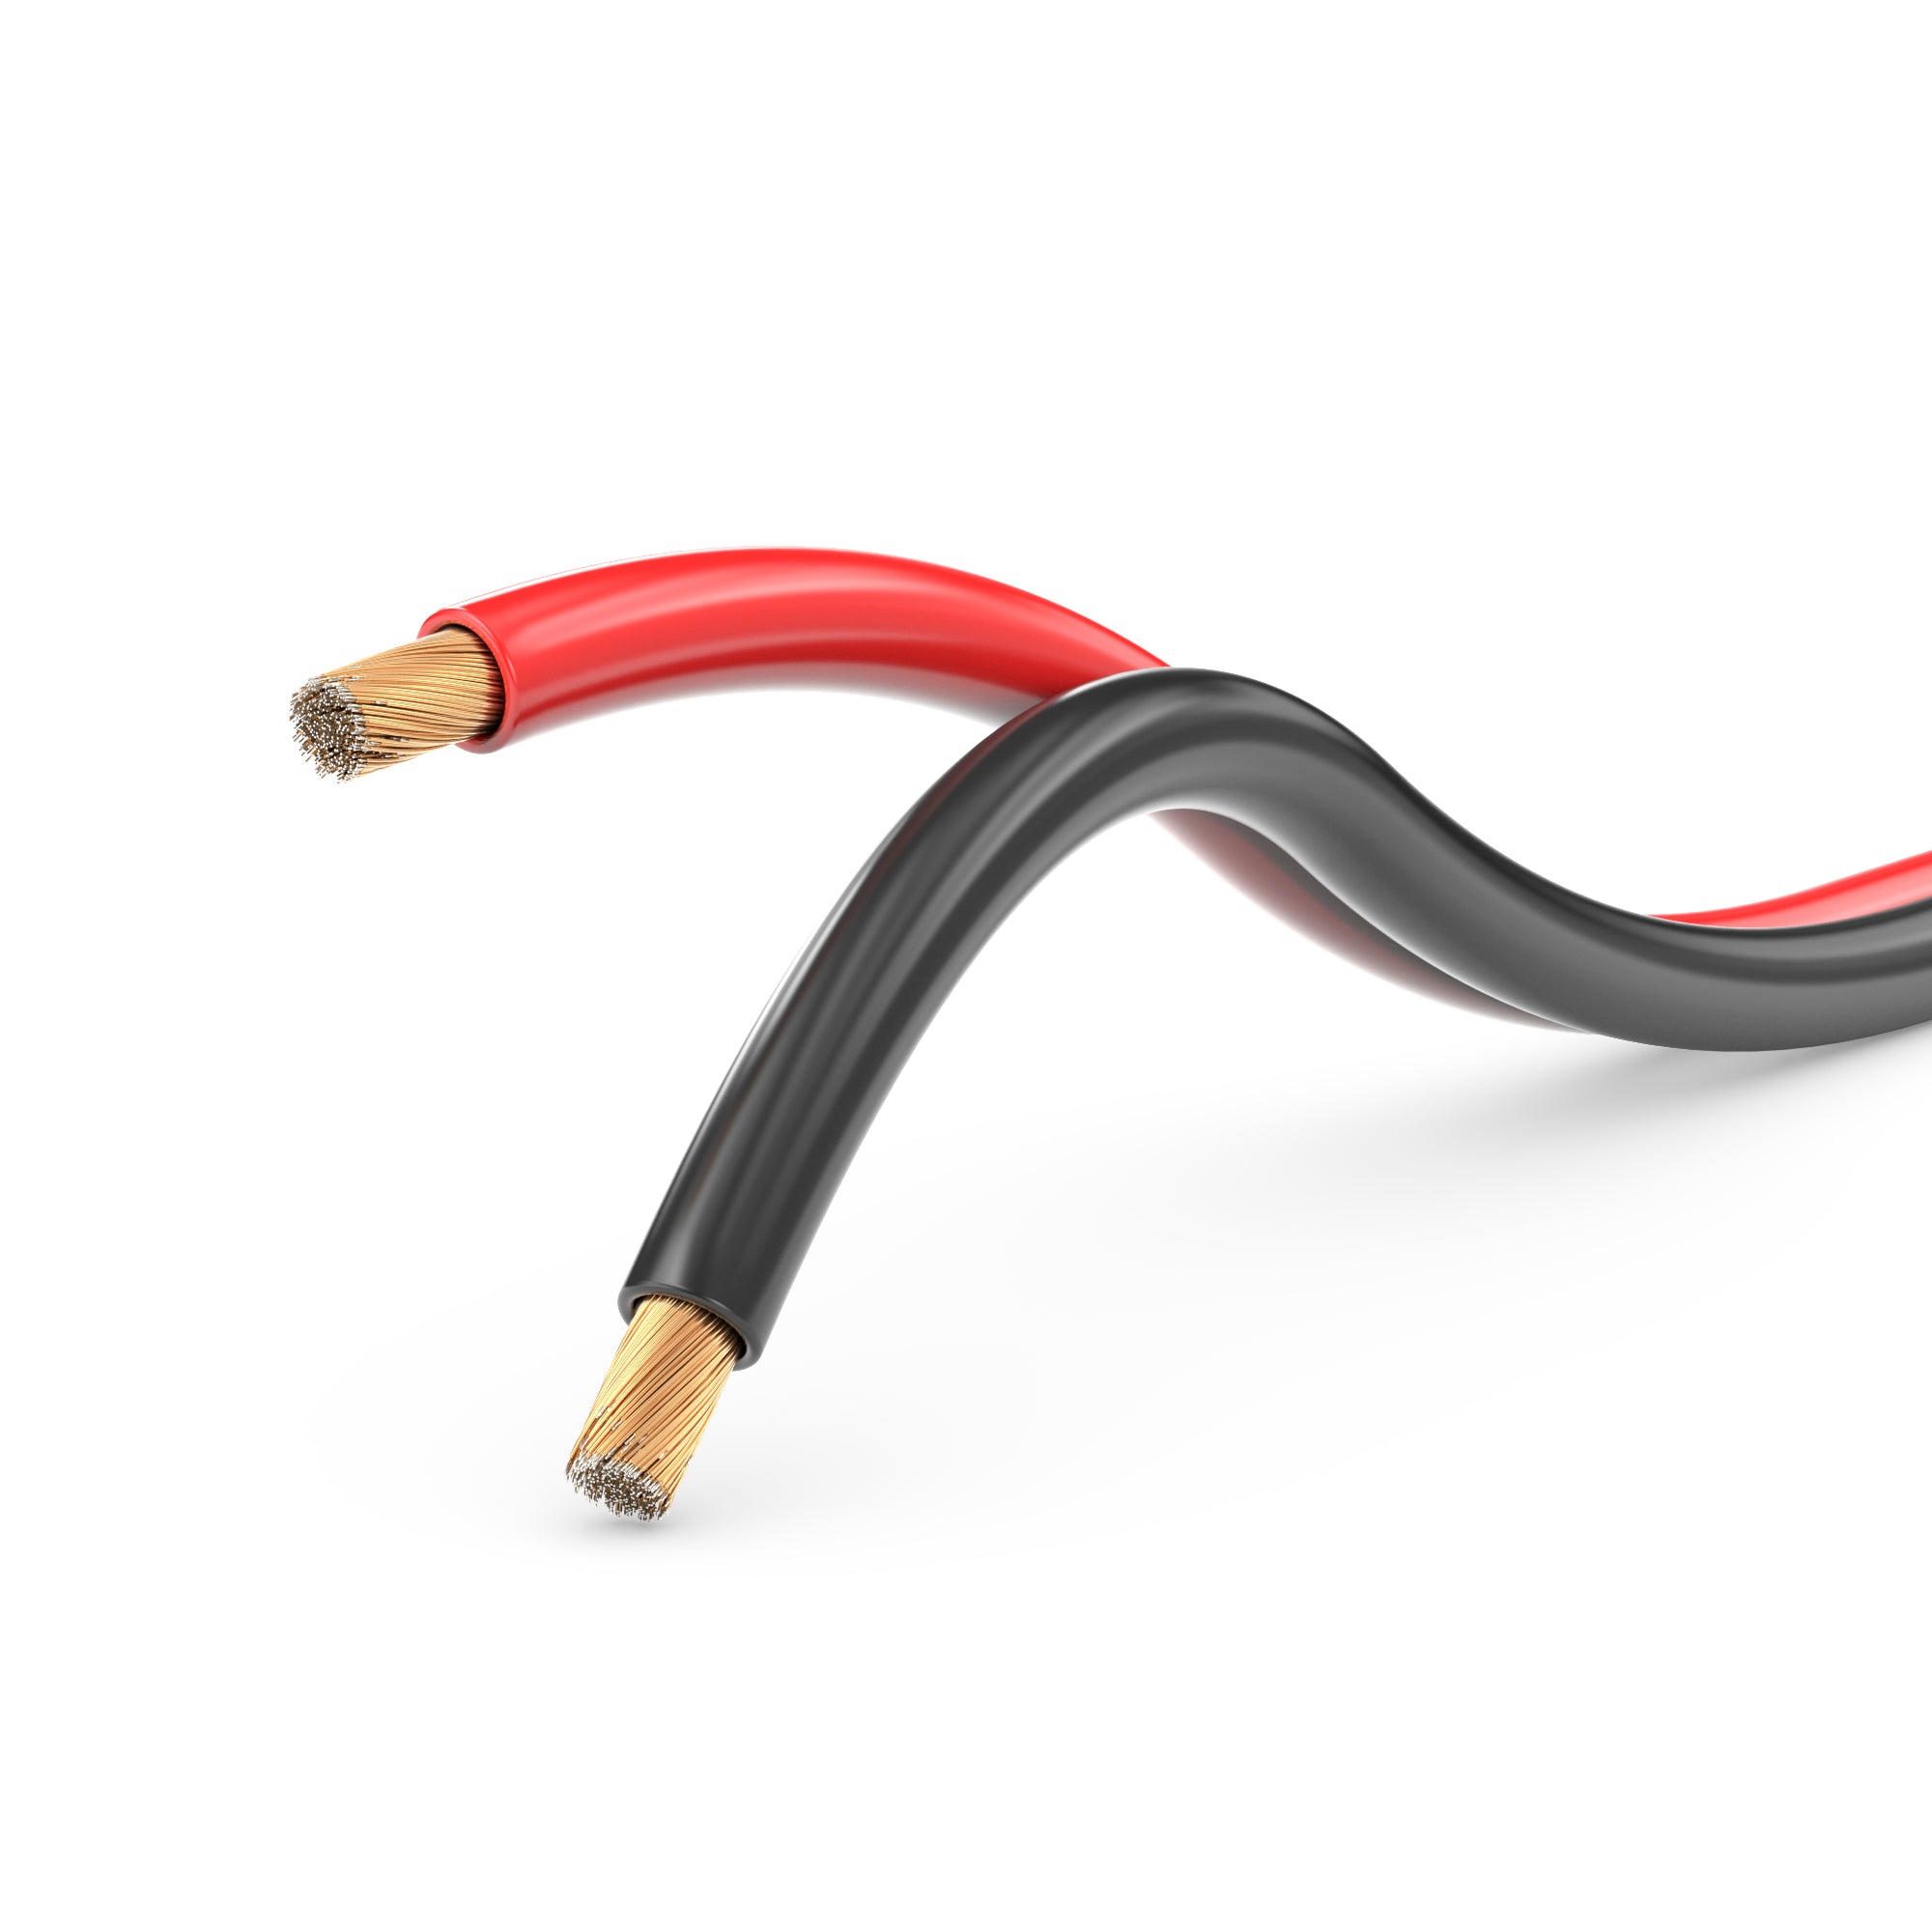 Lautsprecherkabel Audio Kabel Boxenkabel 100% CCA 25m 2x0,75mm² rot / schwarz